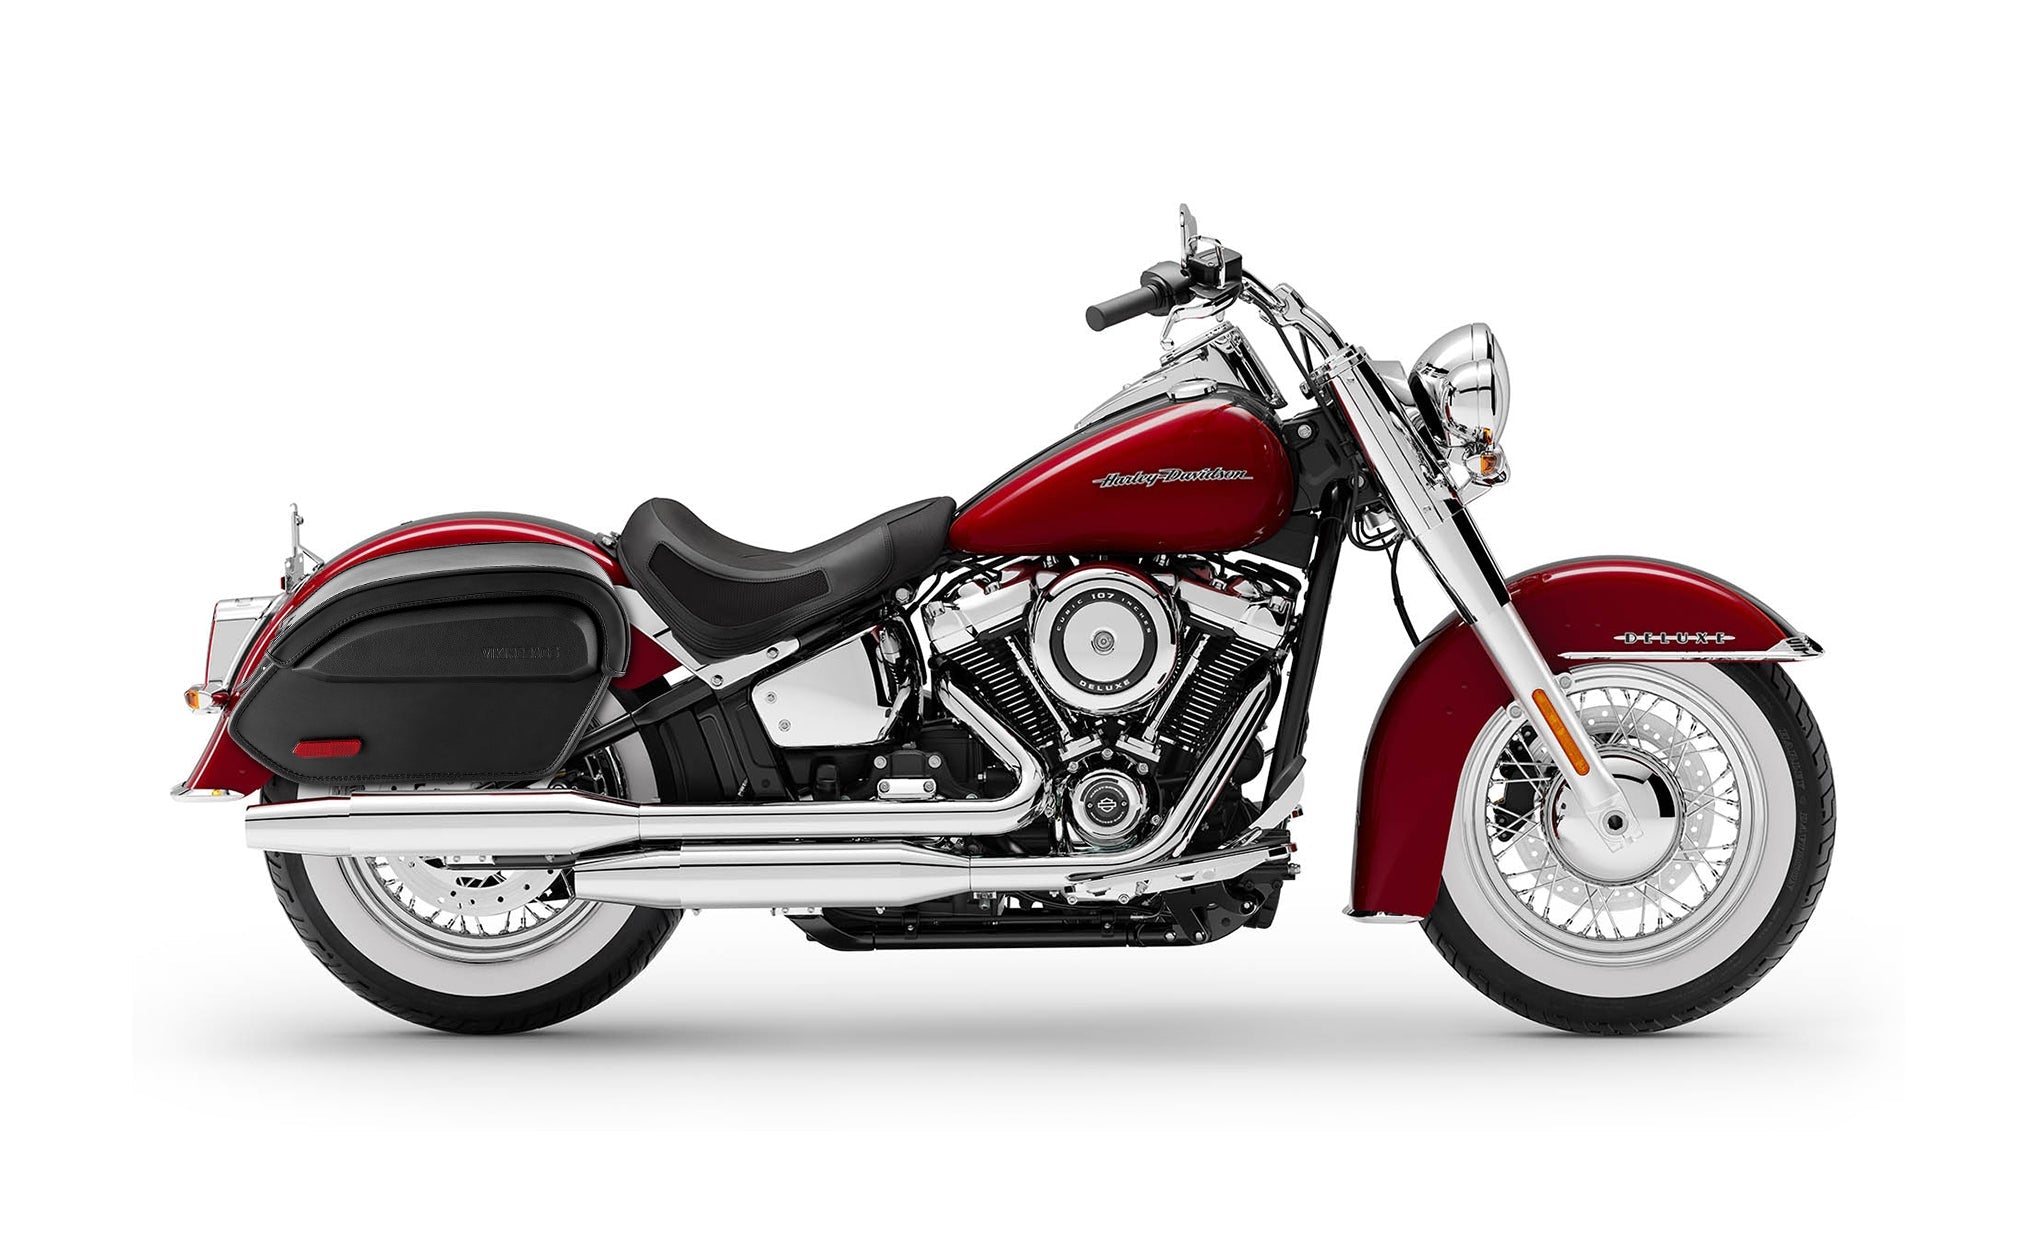 Viking Aviator Large Leather Motorcycle Saddlebags For Harley Softail Deluxe Flstn I on Bike Photo @expand